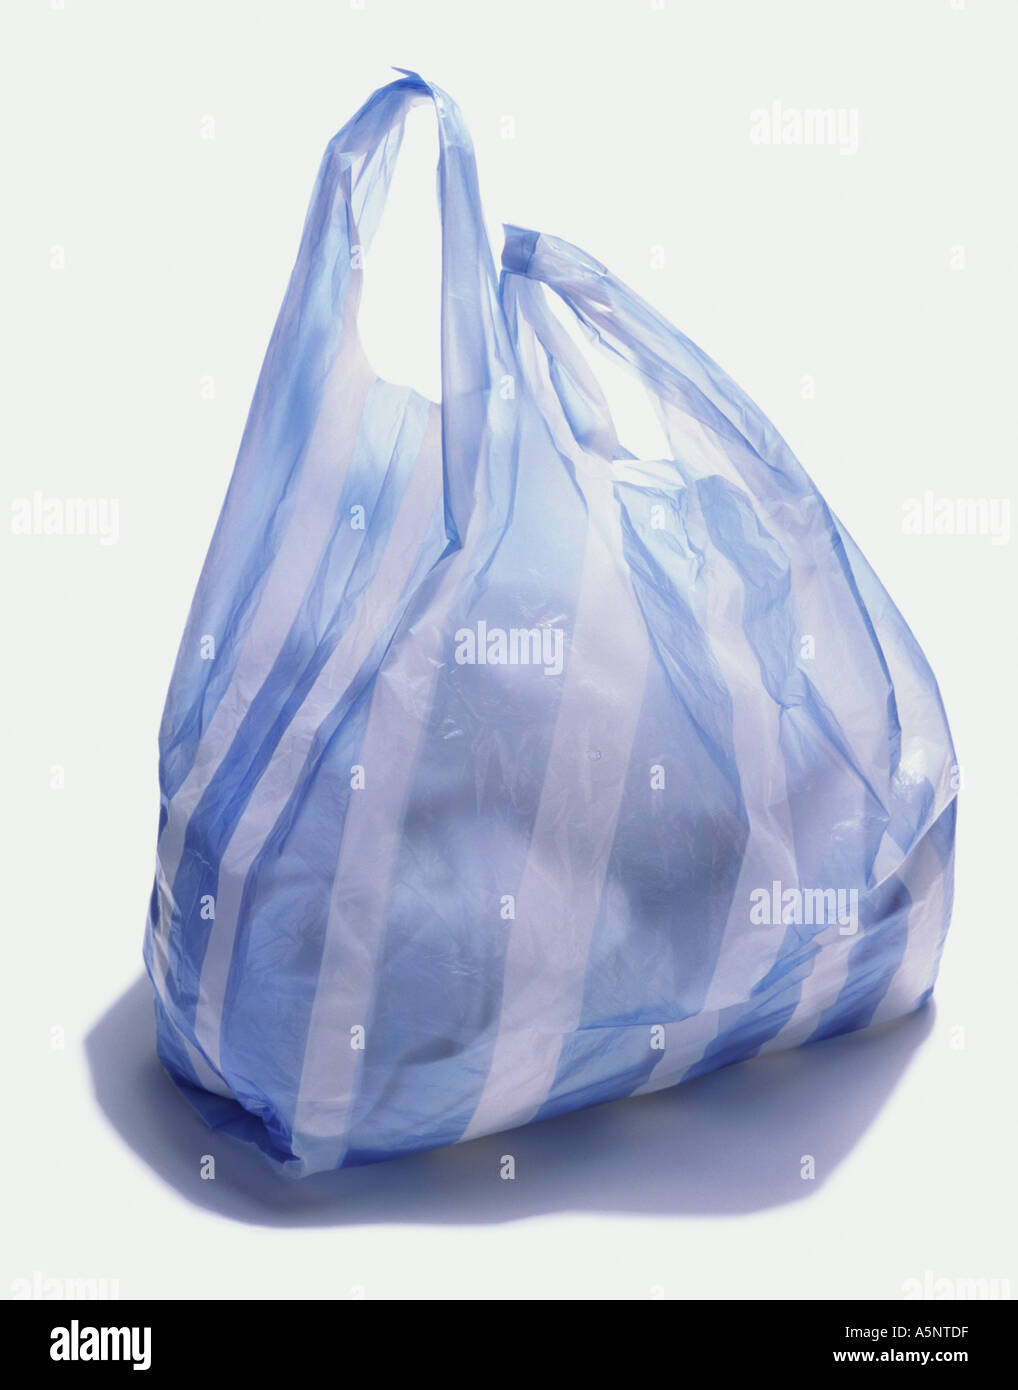 Rayé bleu et blanc un sac en plastique Banque D'Images